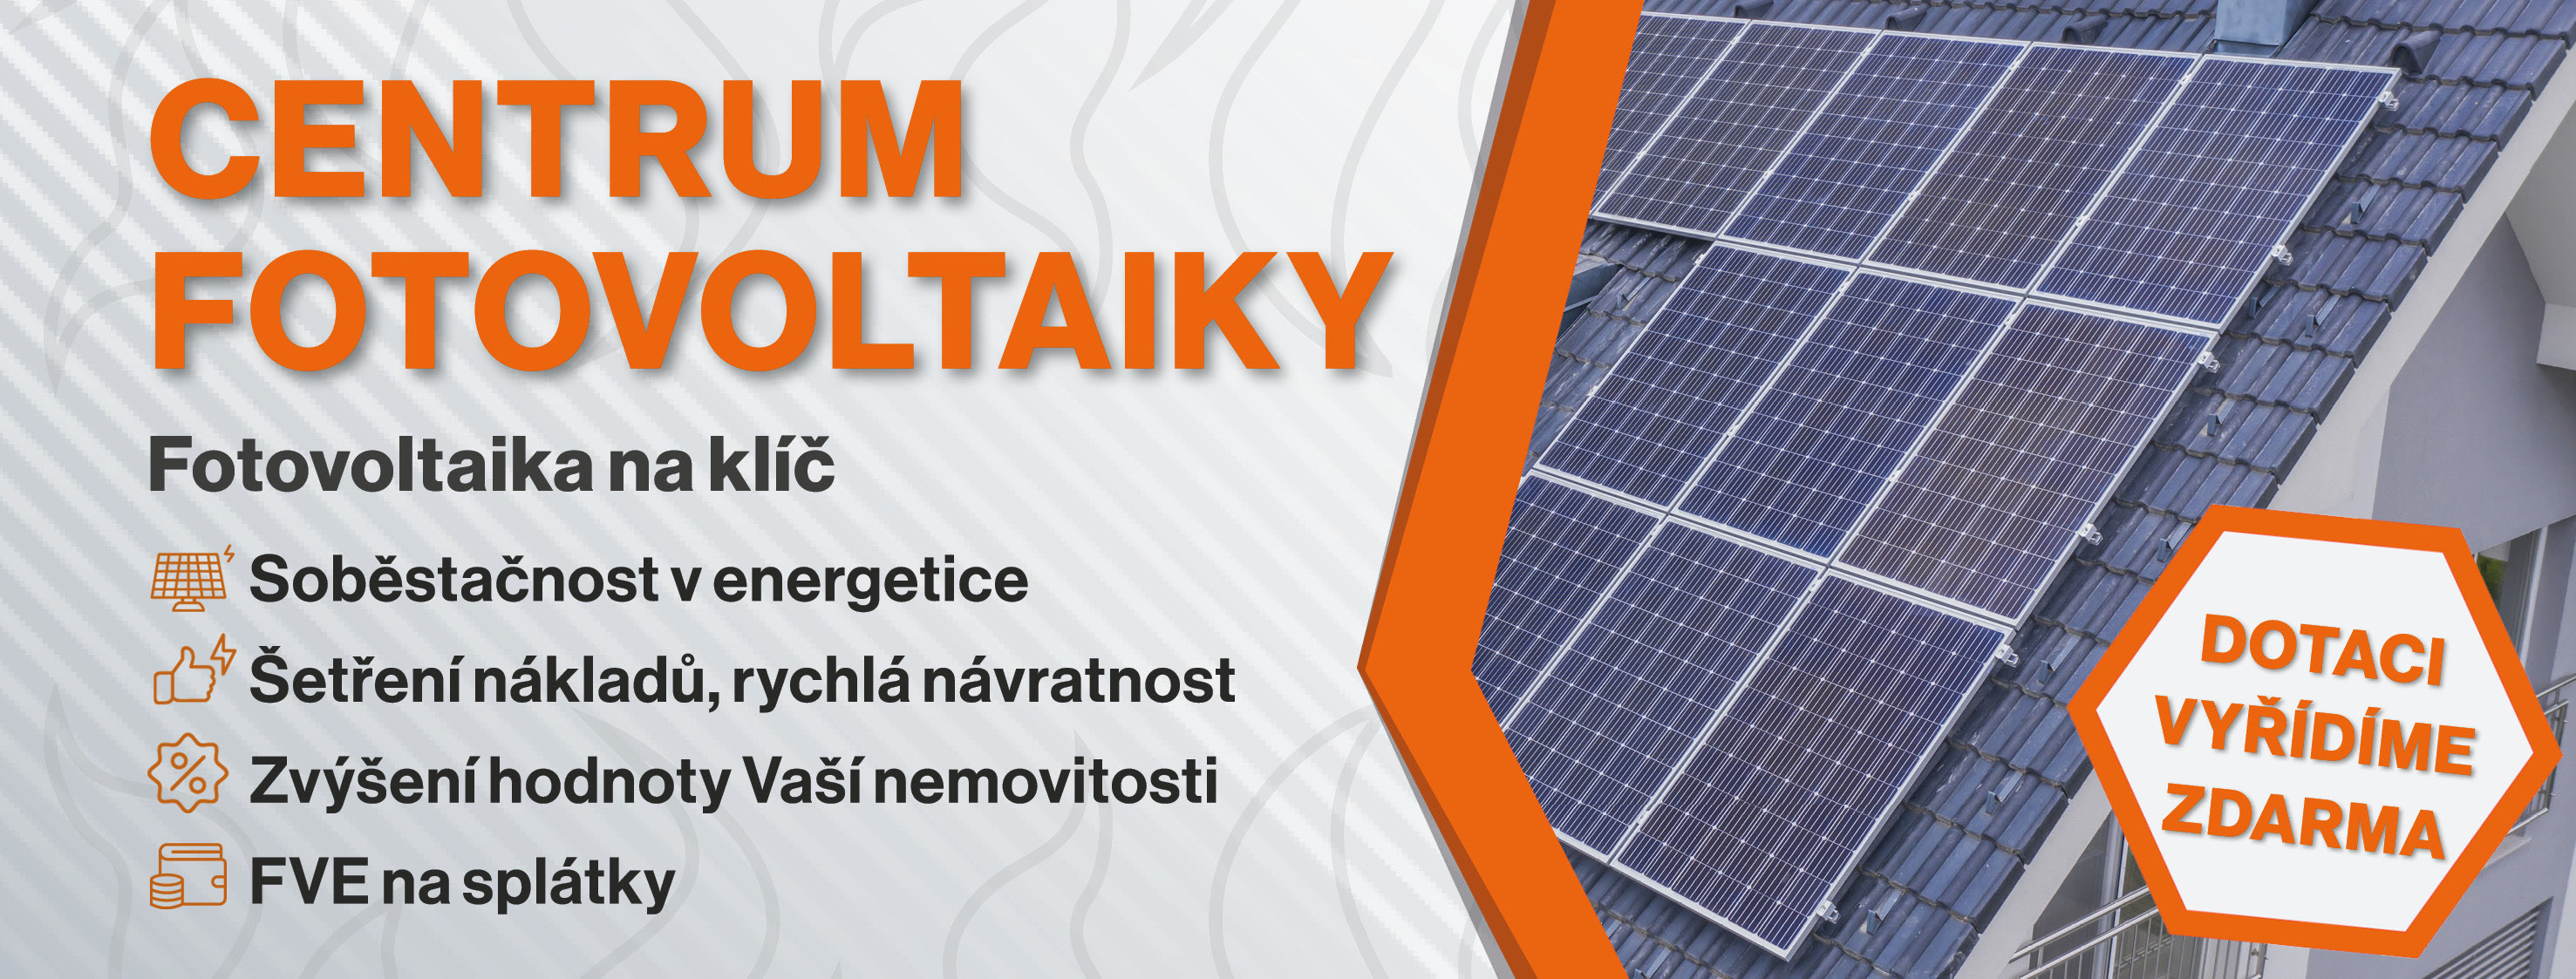 fotovoltaika-banner